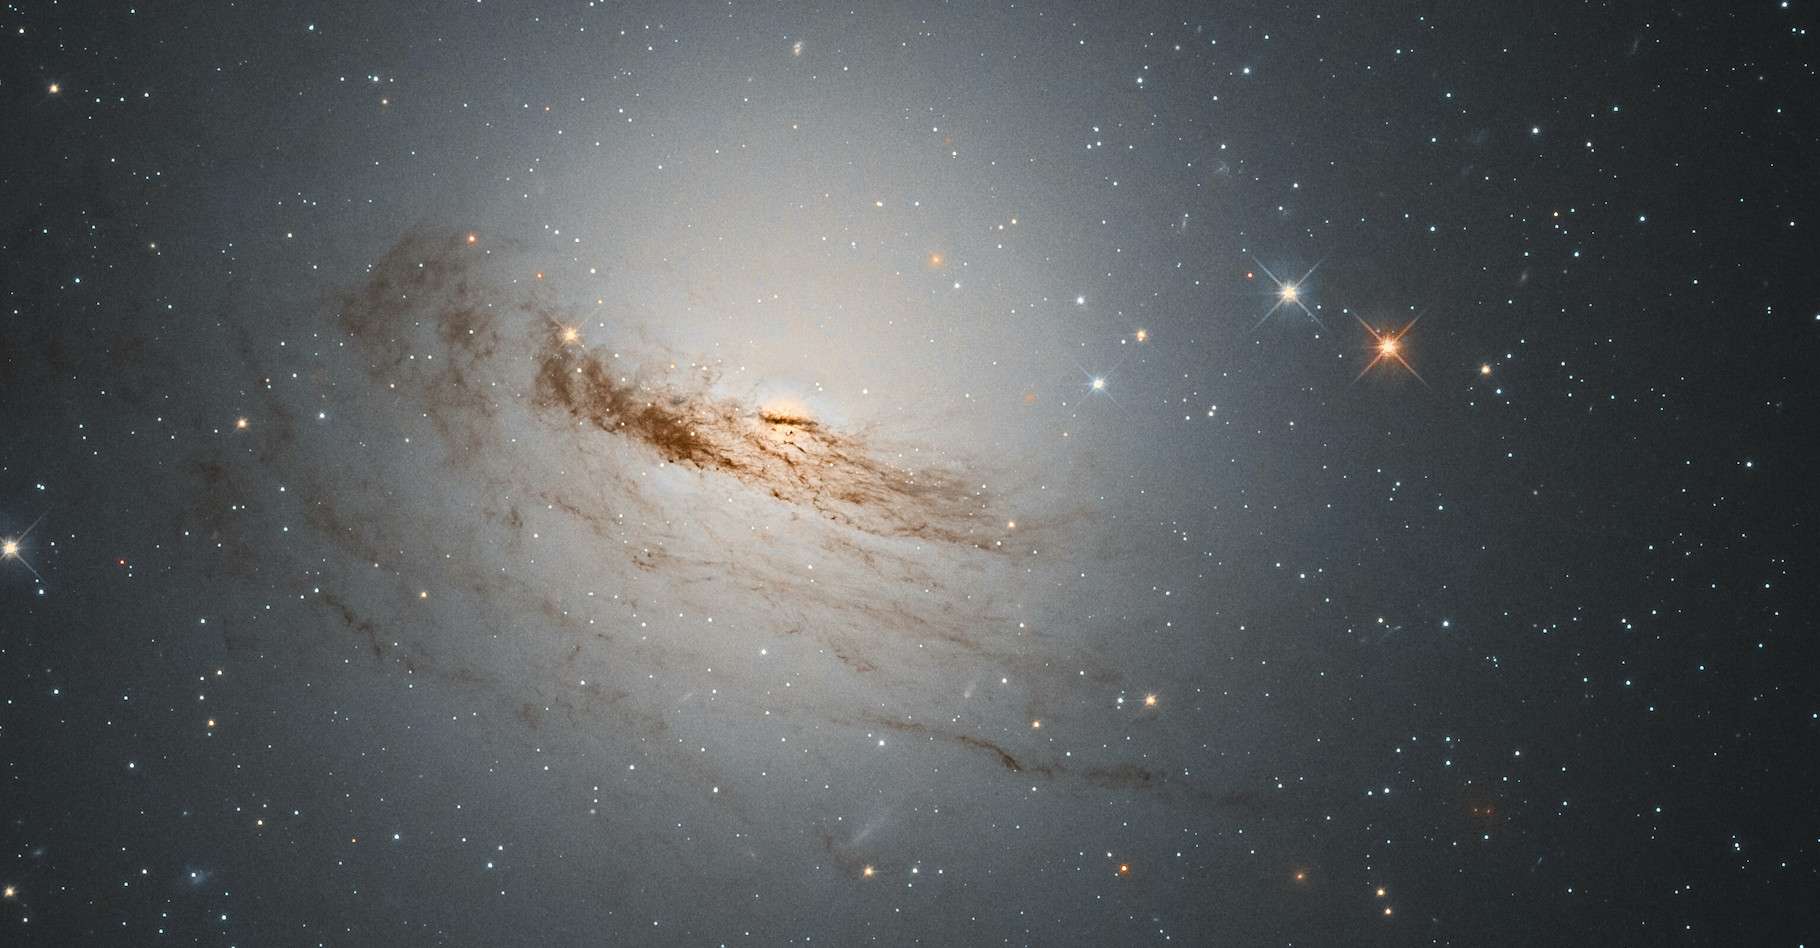 Les restes de la galaxie lenticulaire NGC 1947 révélés par le télescope spatial Hubble © D. Rosario, ESA, Hubble & NASA